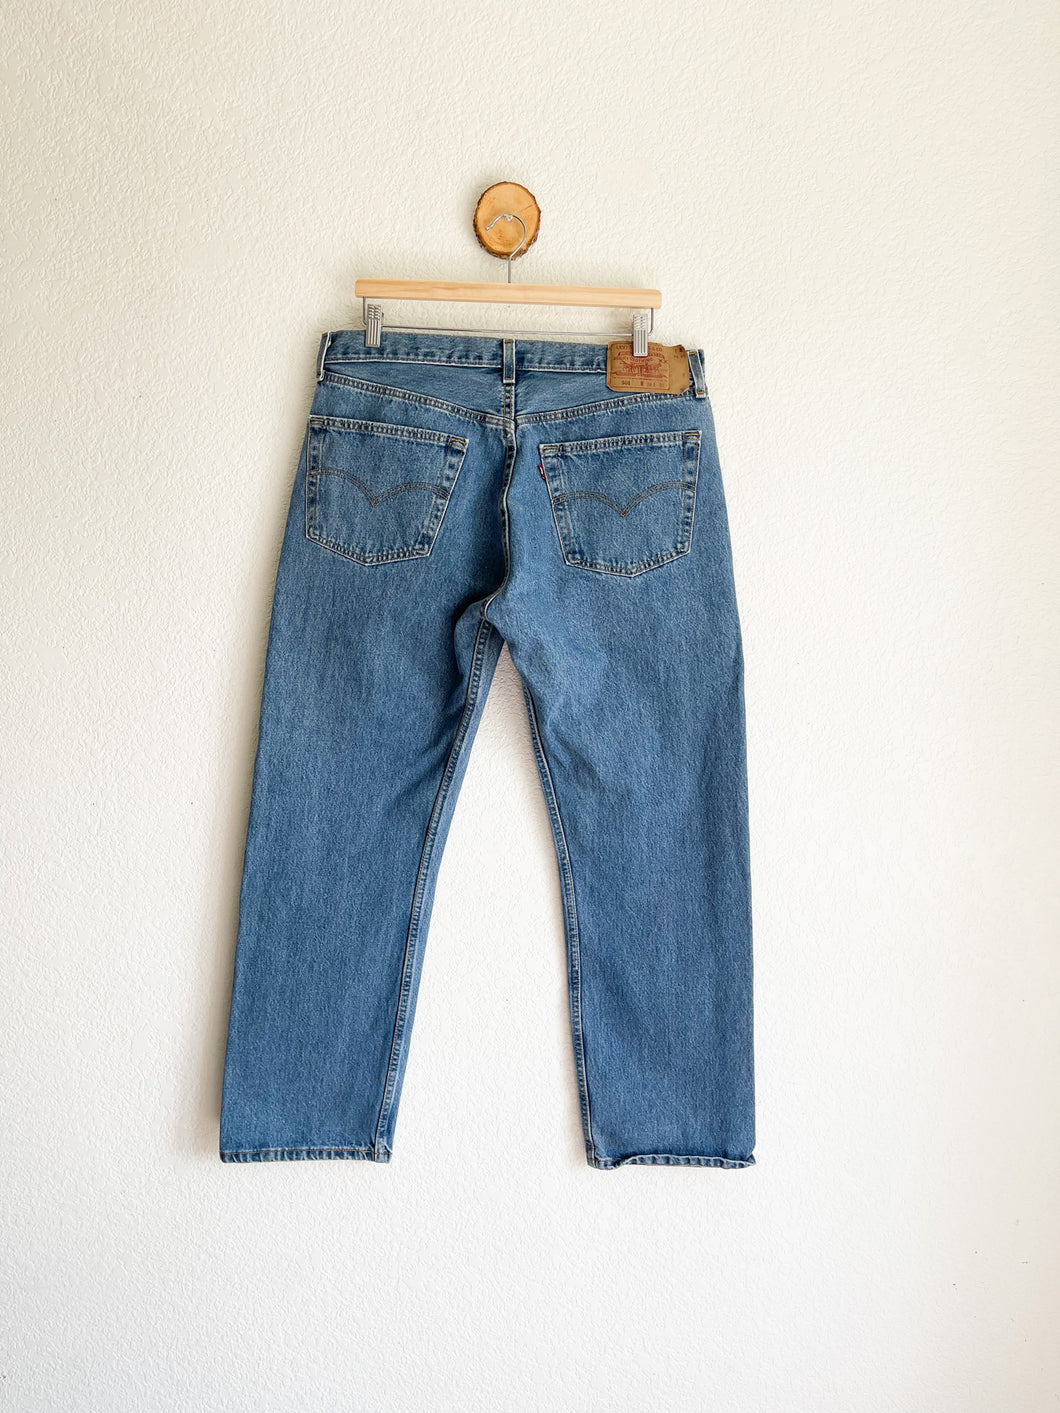 Vintage Levi's 501 Jeans - 35